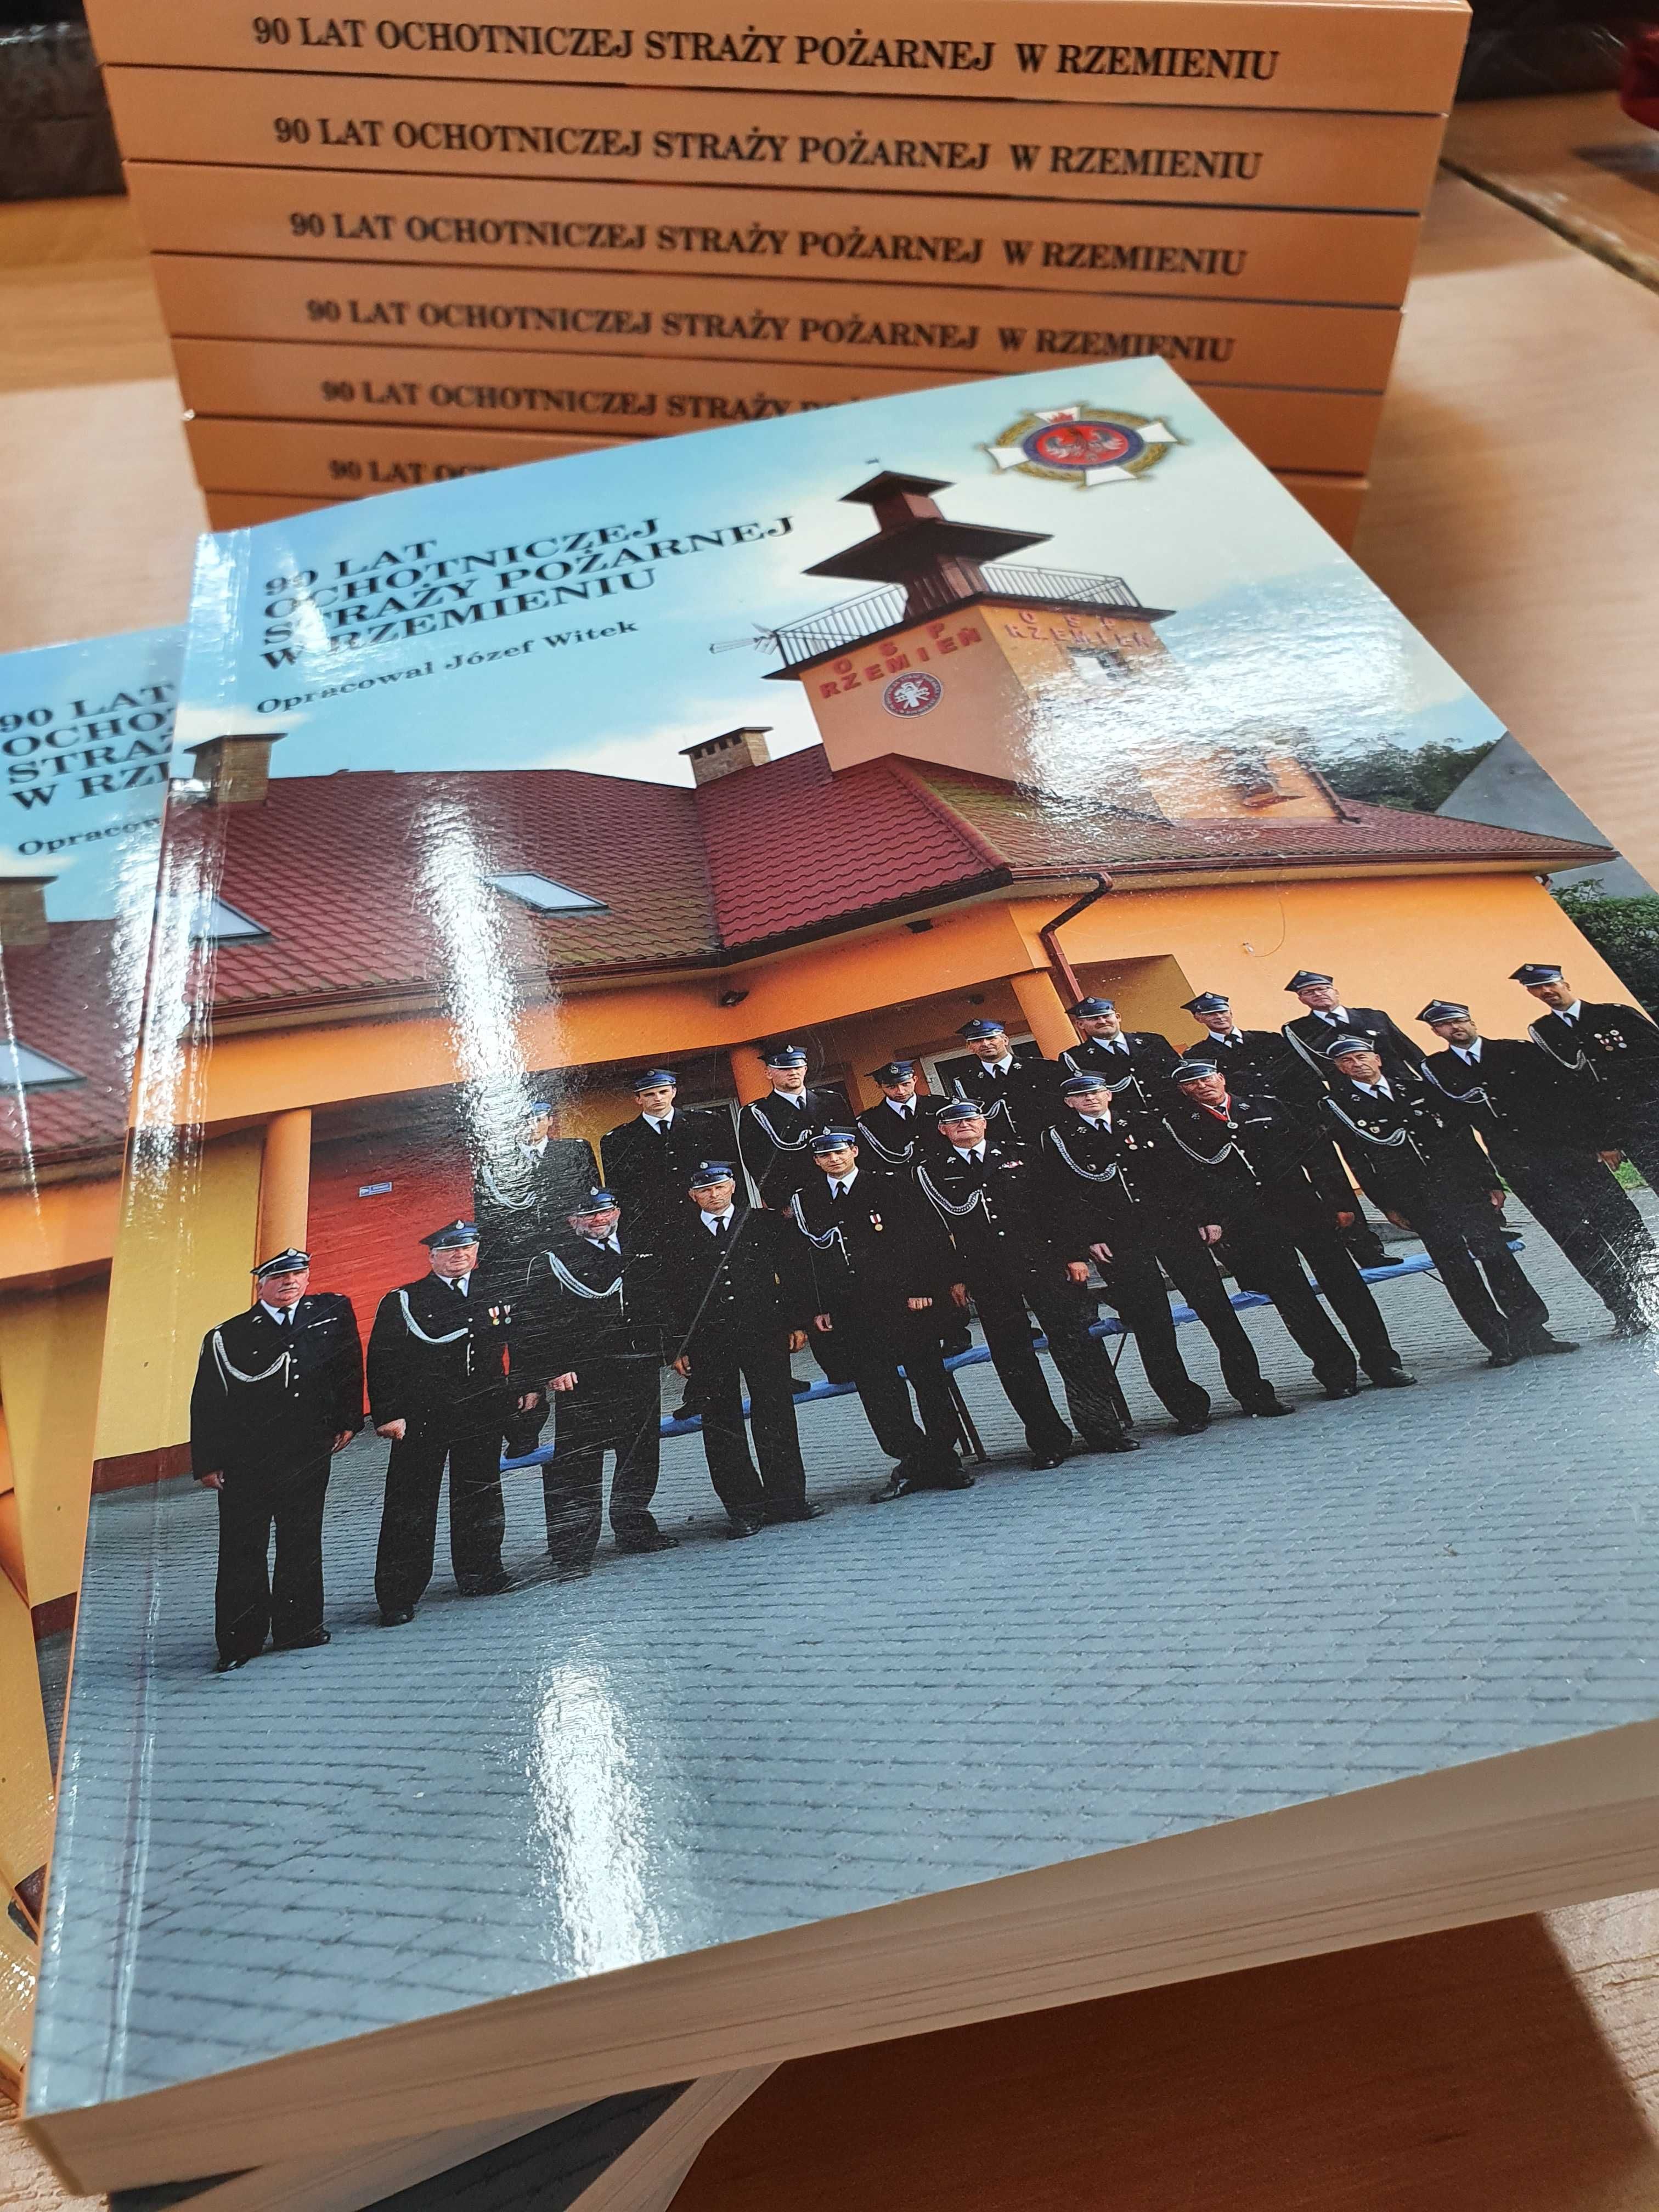 Książka "90 lat Ochotniczej Straży Pożarnej w Rzemieniu"